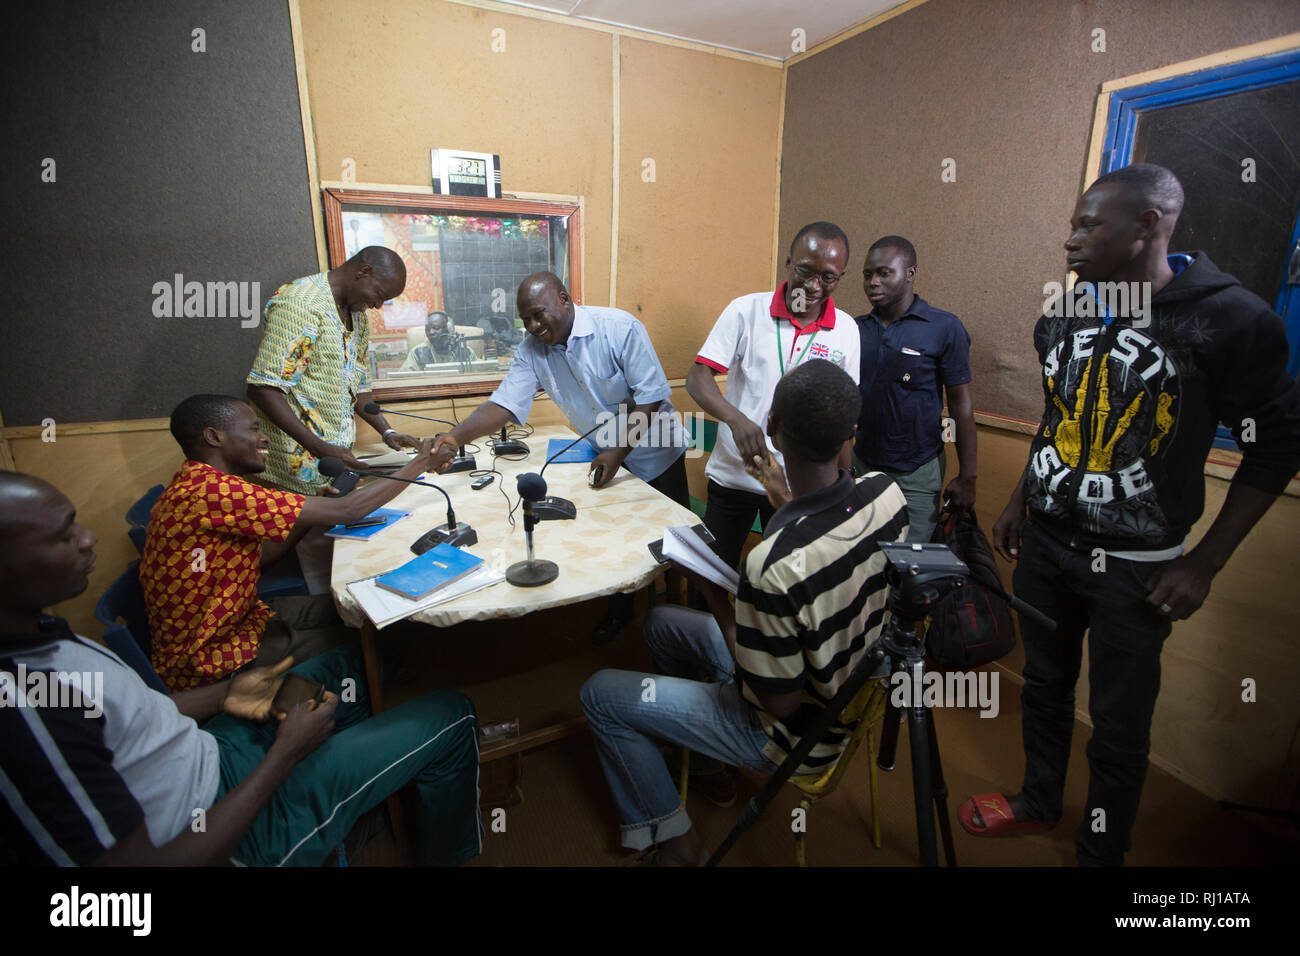 Ciudad Yako, Burkina Faso : programa de radio educativa sobre nutrición y seguridad alimentaria, se transmitirán en vivo por Radio Natigmbzanga. Foto de stock